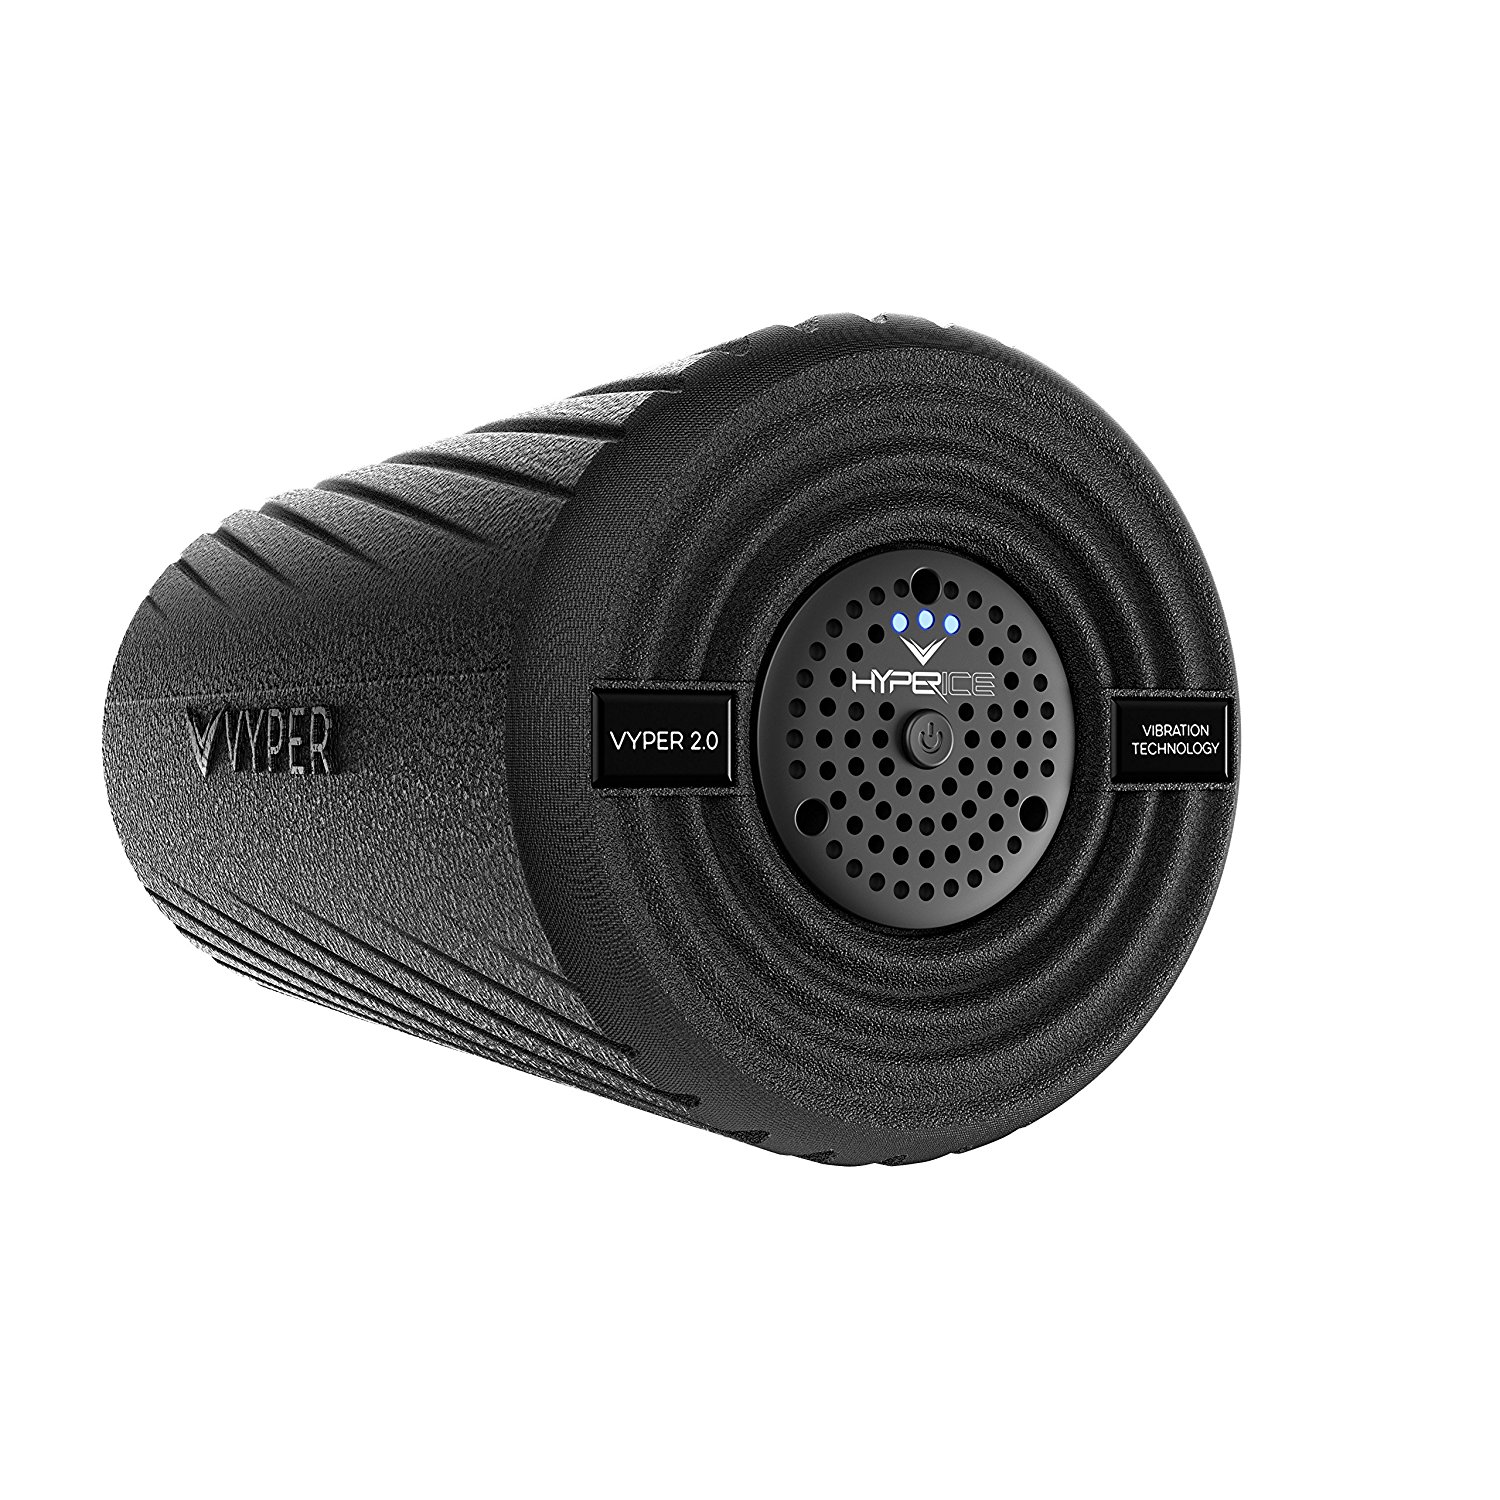 Hyperice Vyper 20 Vibrating Foam Roller Review • Best Massage Tech 1214